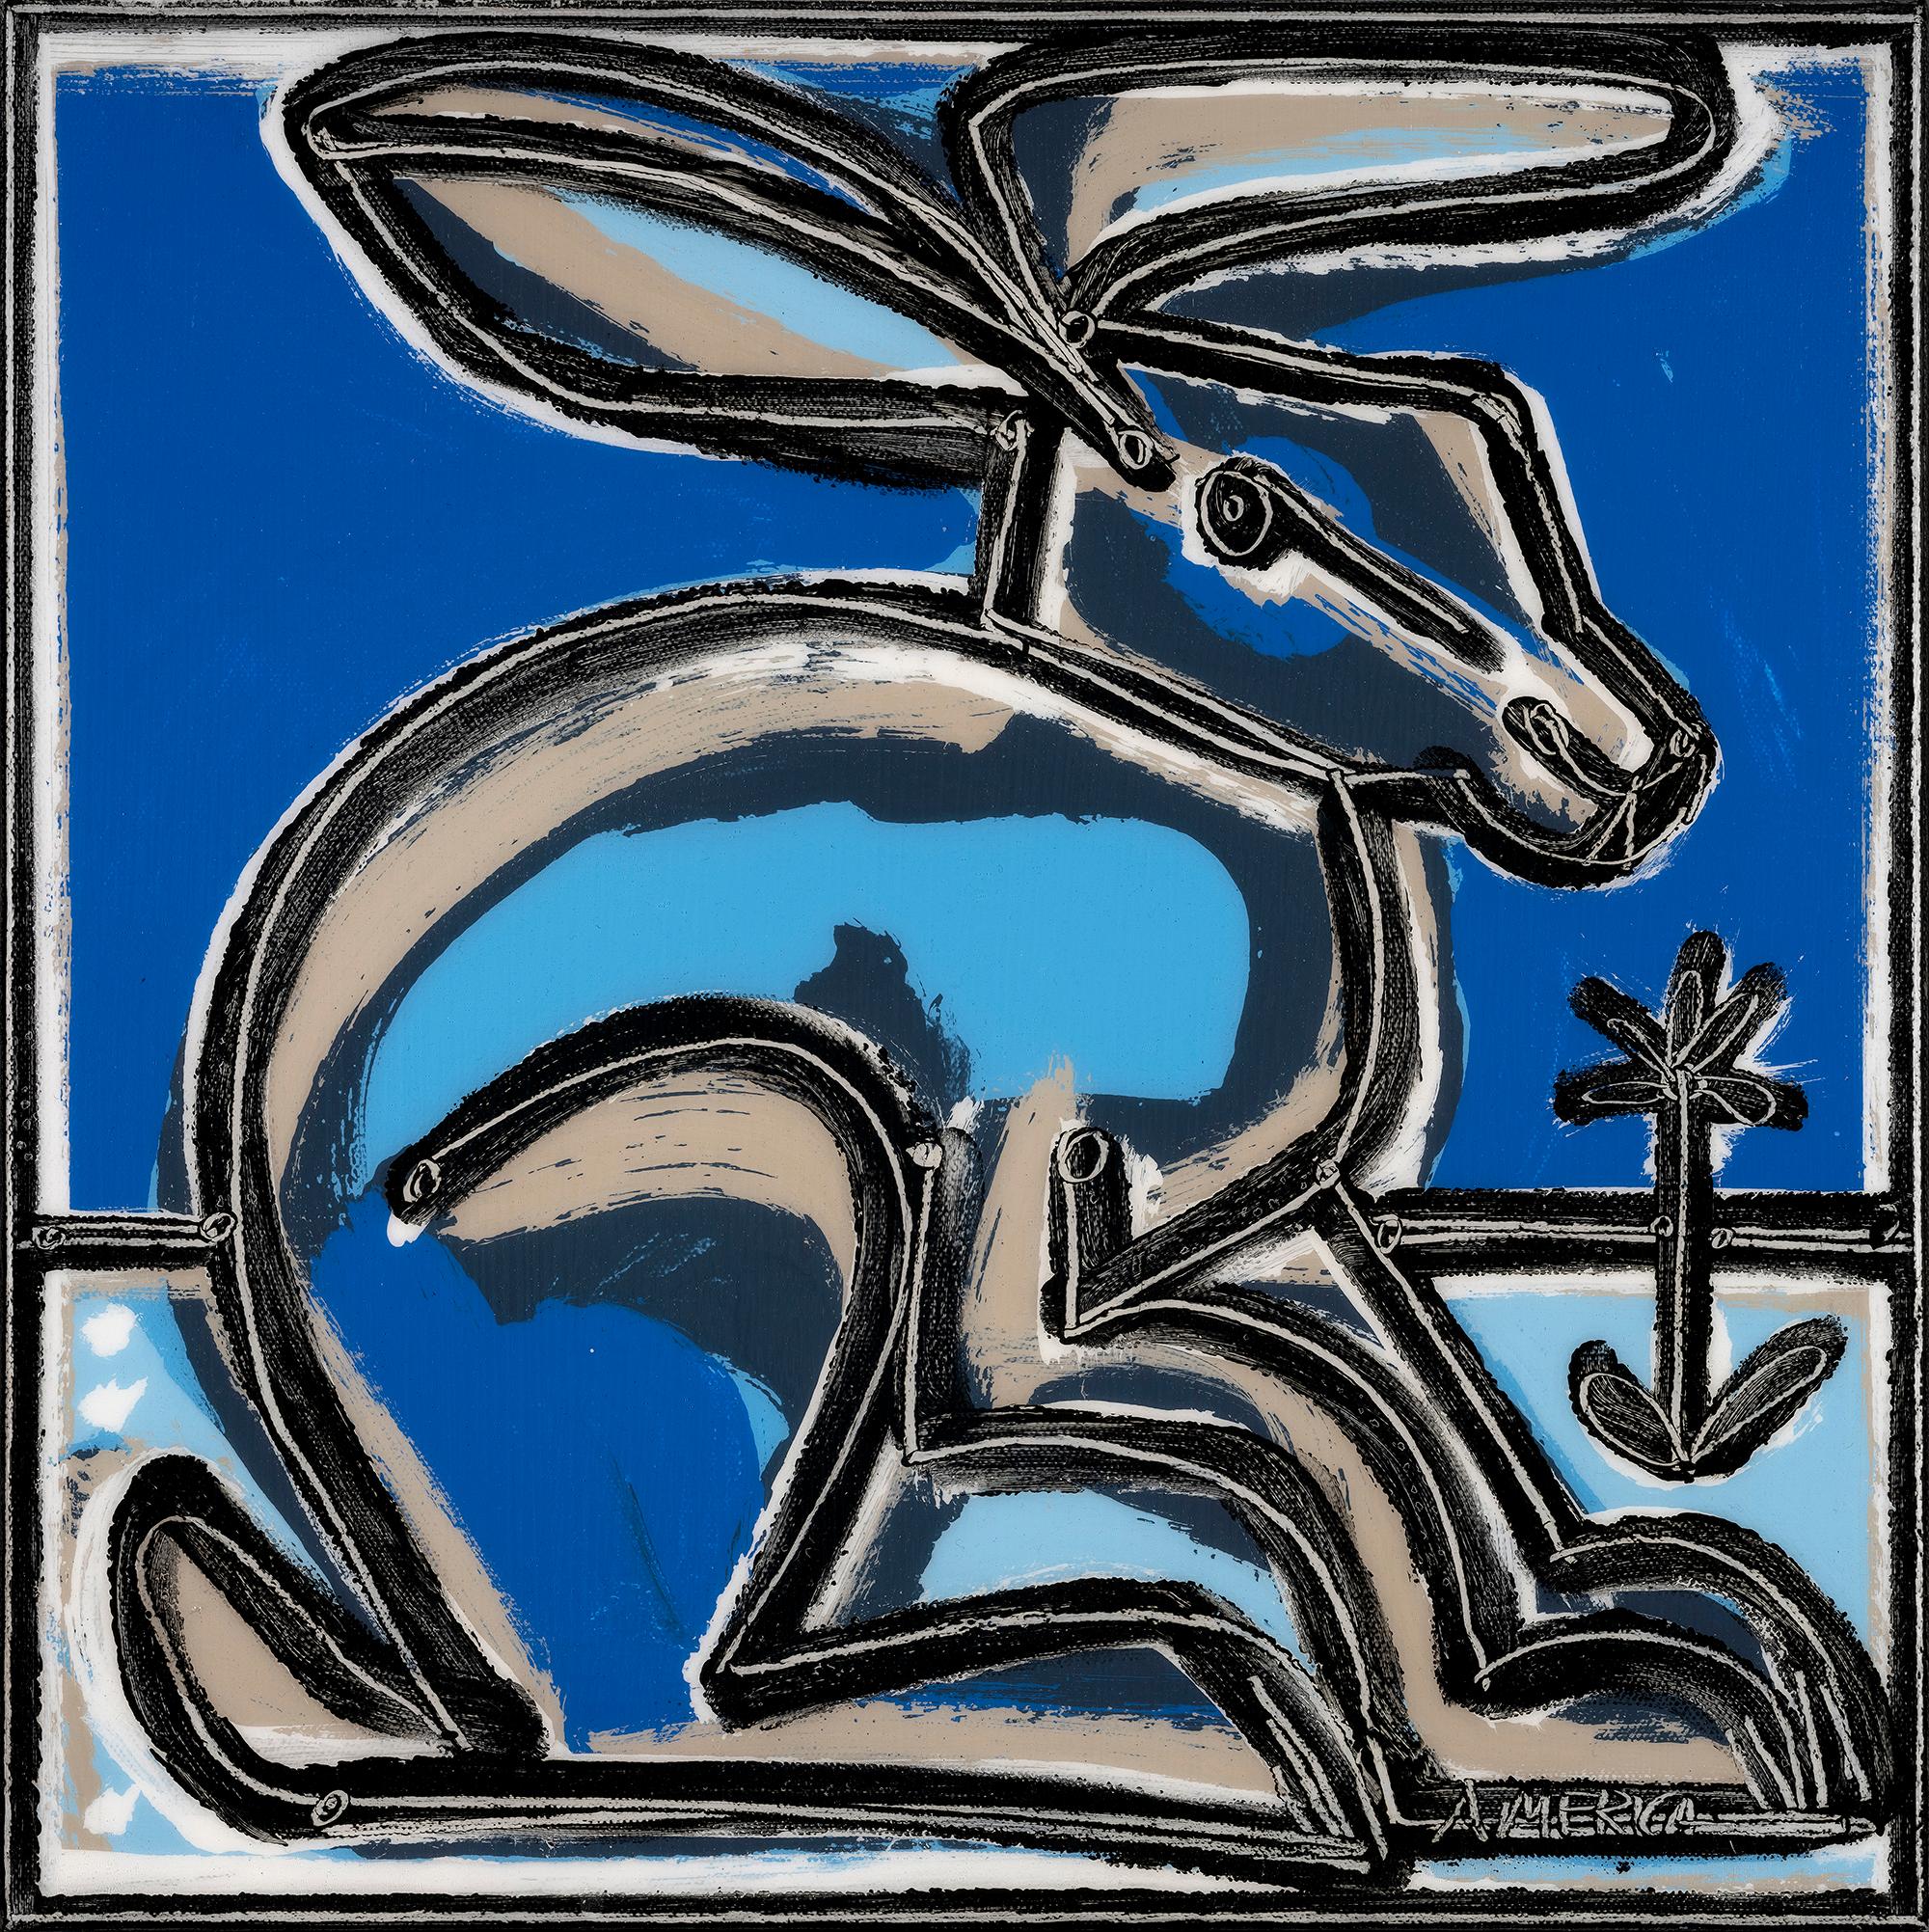 Amerika Martin
"Blaues Kaninchen (links)"
Öl & Acryl auf Leinwand
14 x 14 in. ; 15,625 x 15,625 in. Gerahmt
______________

Die in Los Angeles lebende Künstlerin America Martin lässt sich von ihrem kolumbianischen Erbe und der menschlichen Figur